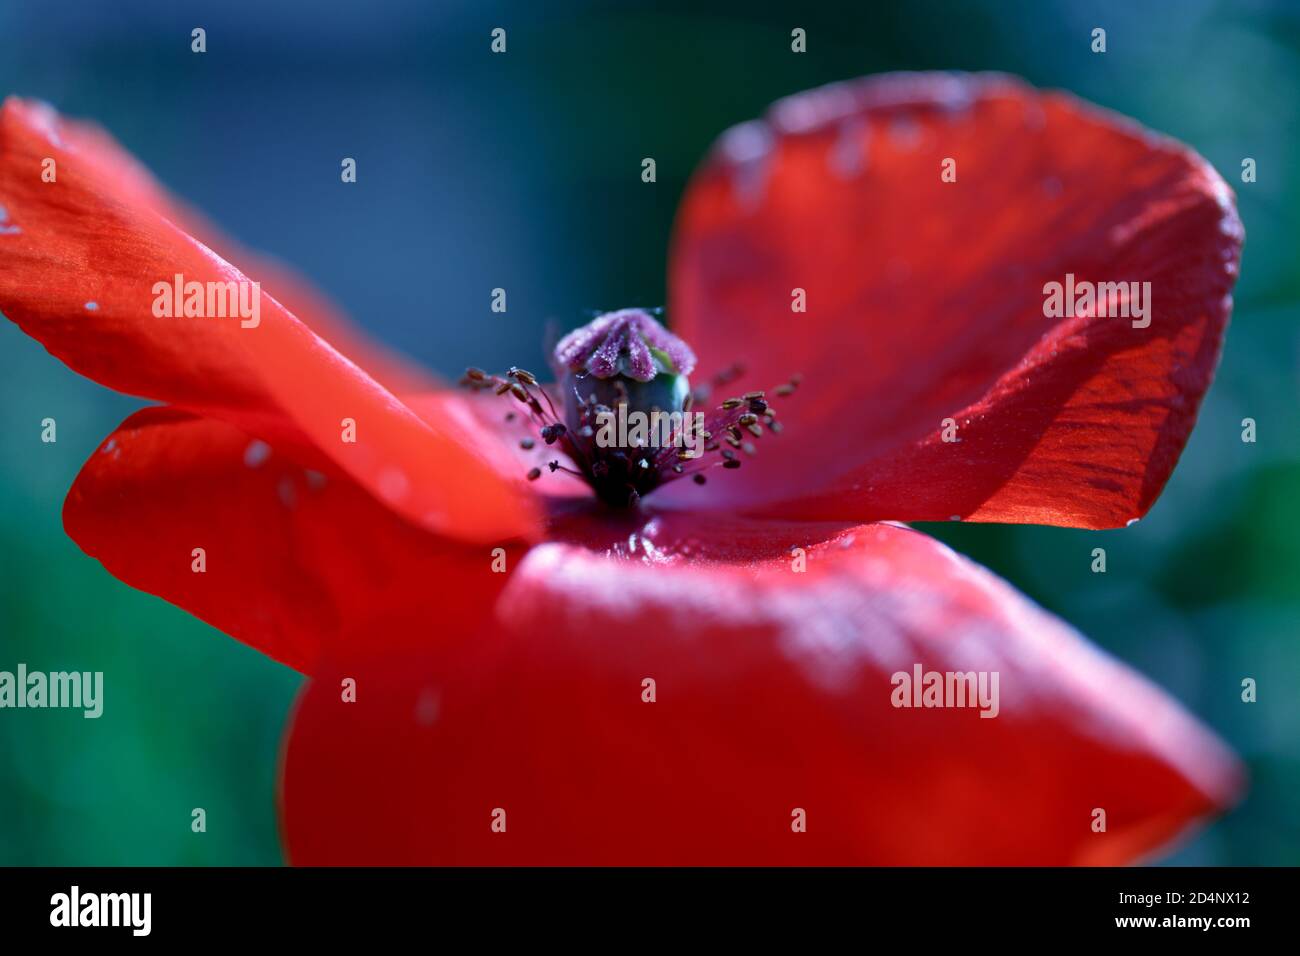 Rote Mohnblume. Geöffnete Blütenblätter eines blühenden Mohnes mit Staubgefäßen und einem Mohnkopf. Blau-grün verschwommener natürlicher Hintergrund. Makrofotografie Stockfoto